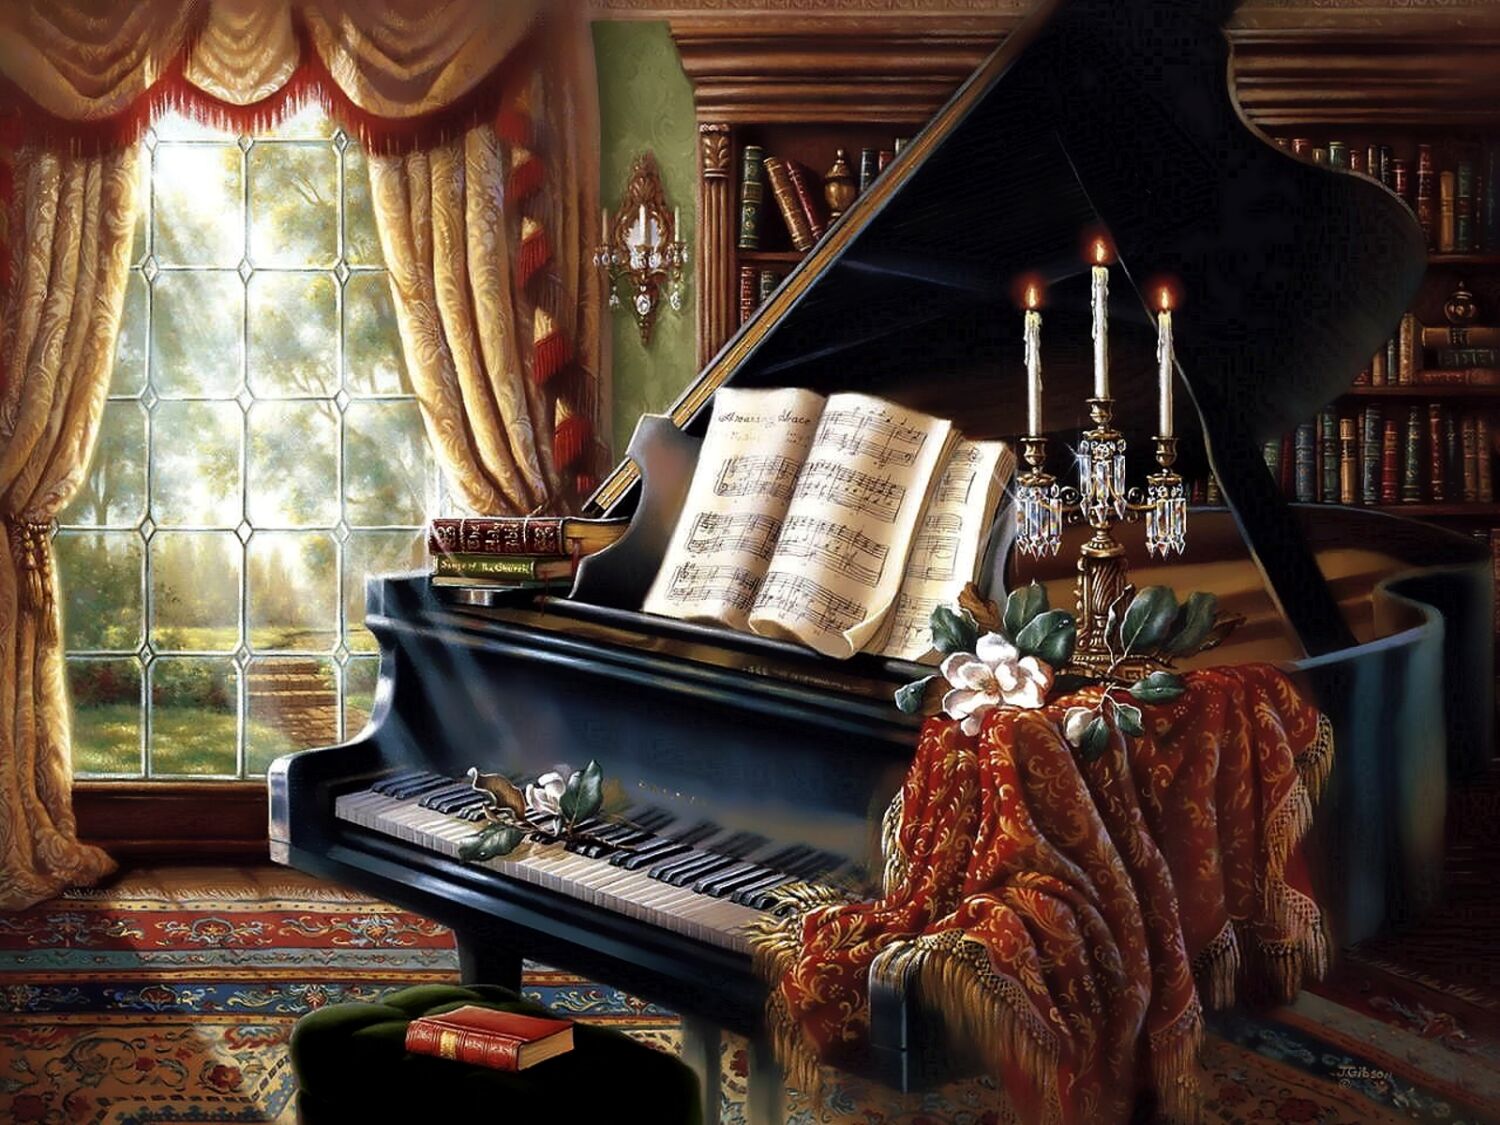 Музыкальный вечер в библиотеках. Художник Джуди Гибсон. Джуди Гибсон. Рояль картина художника. Музыкальная гостиная. Фортепиано.